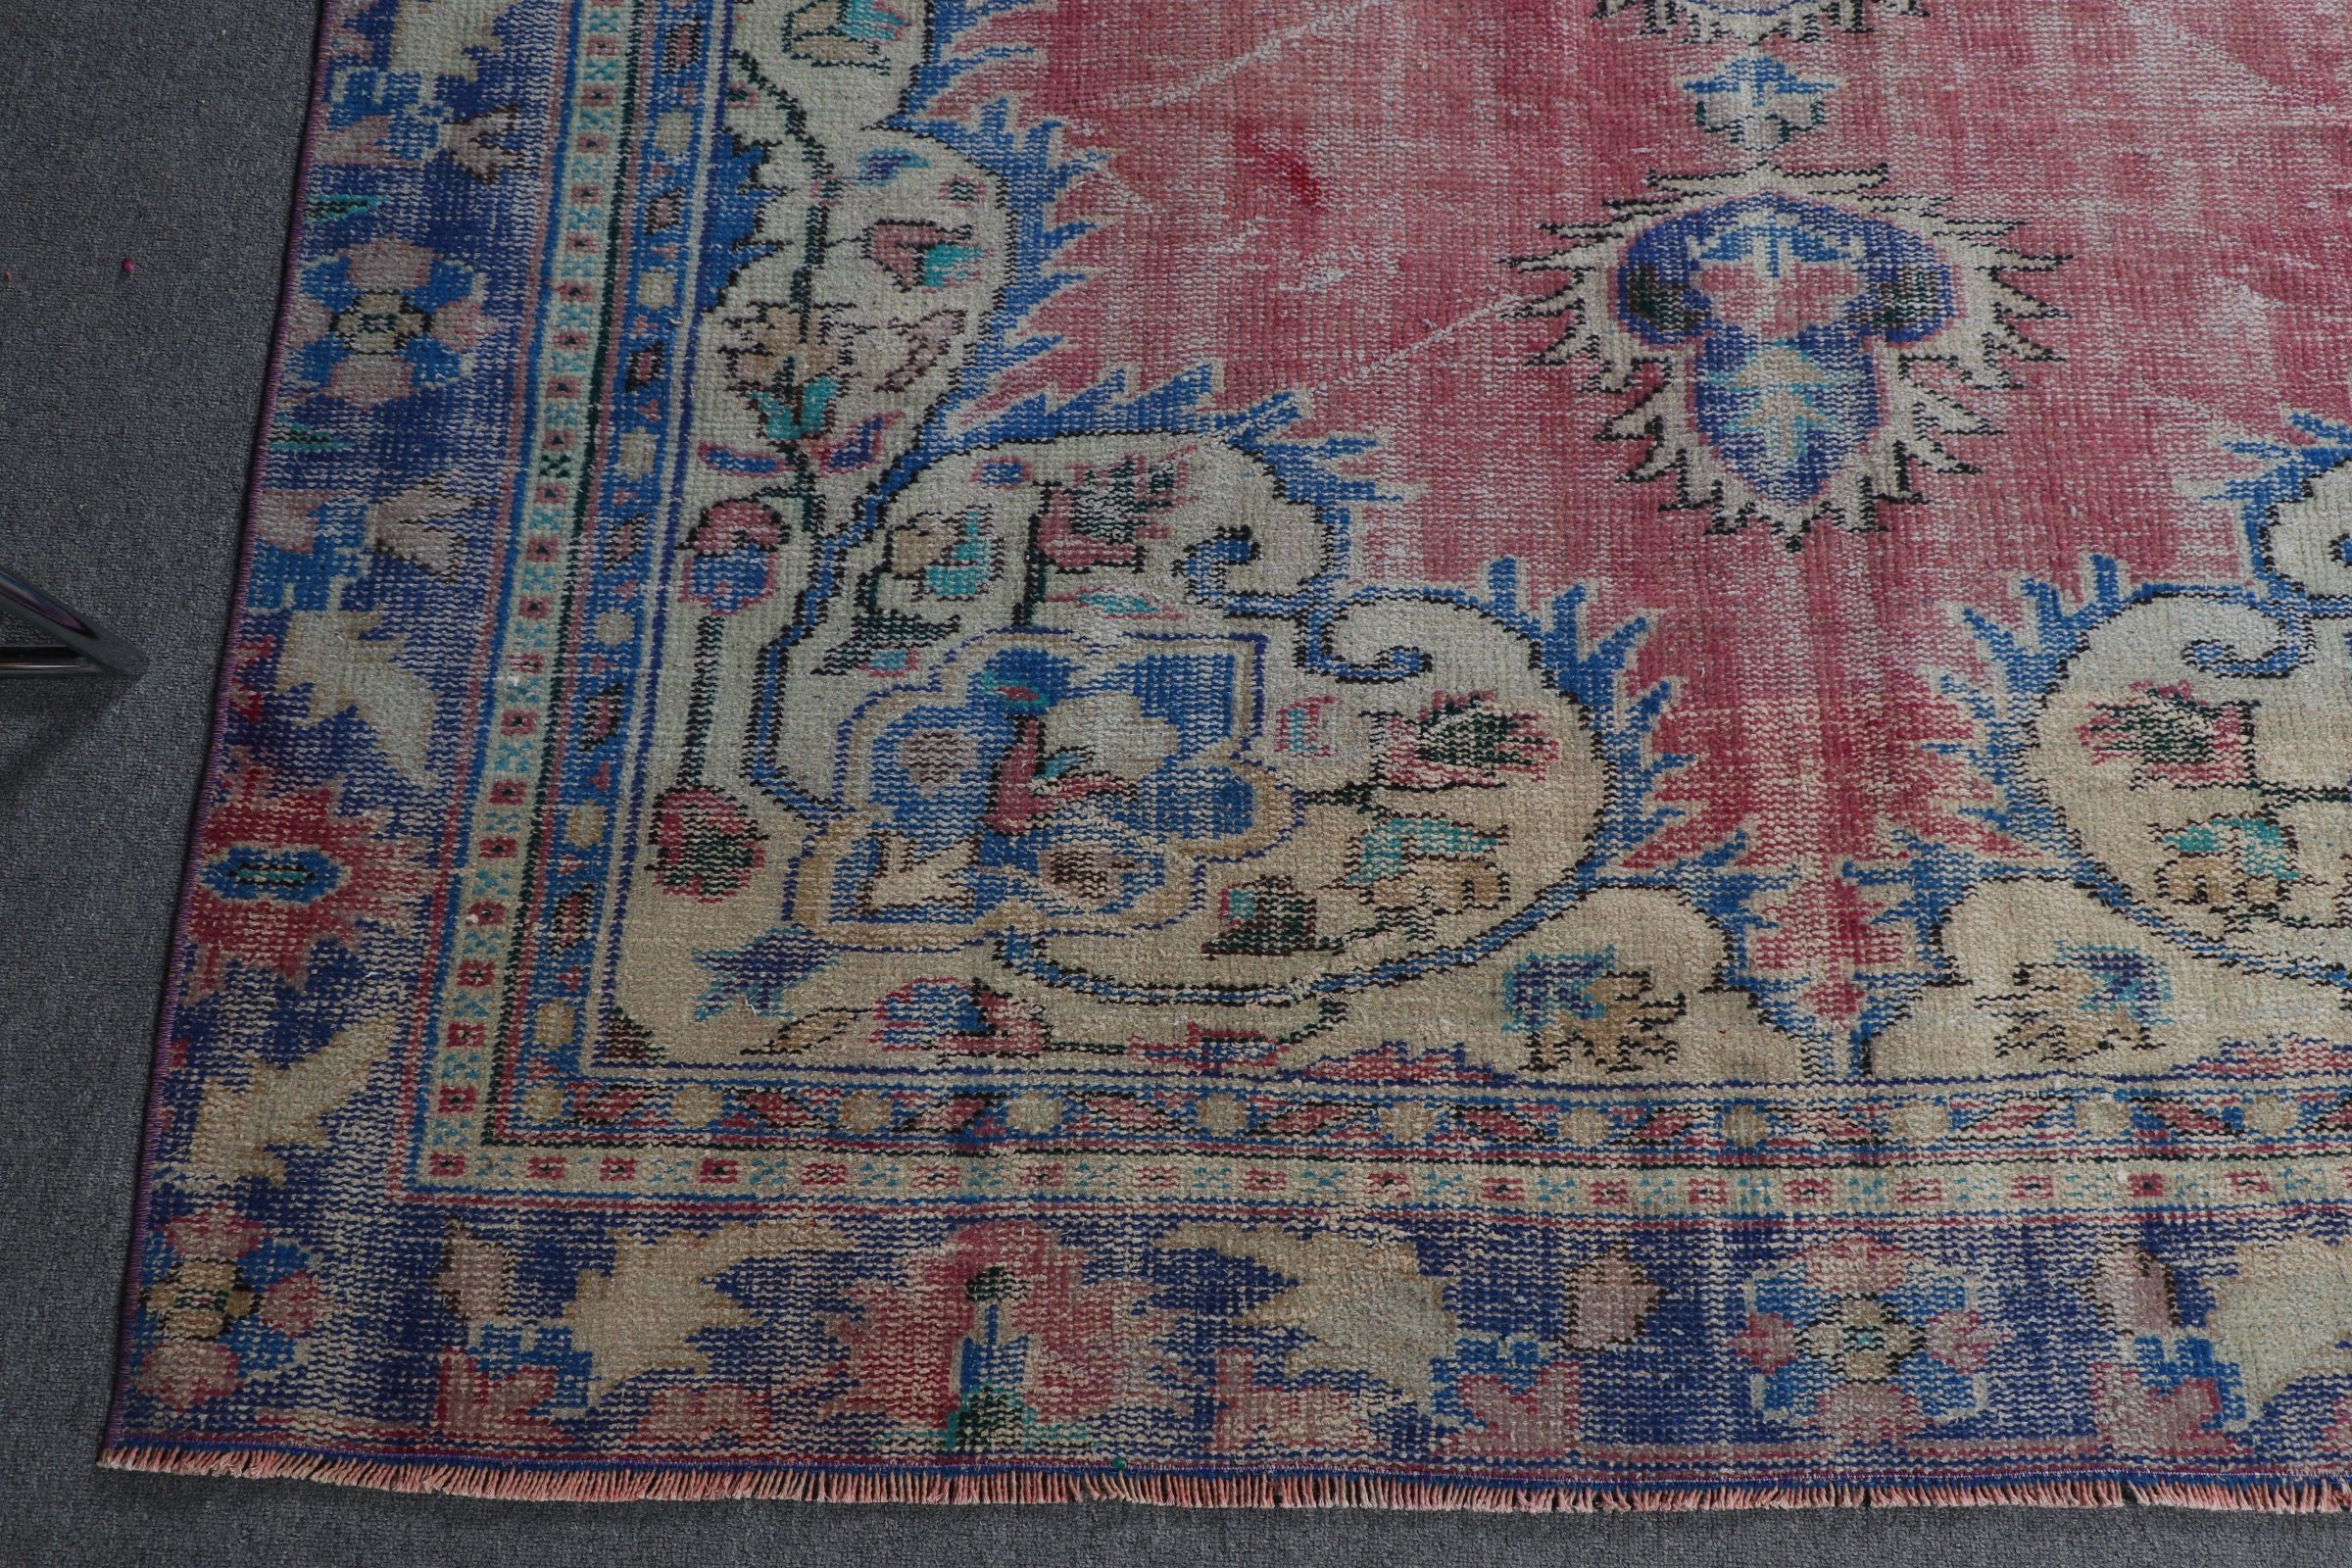 Living Room Rugs, Floor Rugs, Vintage Rug, Dining Room Rugs, 5.8x9.2 ft Large Rug, Pink Oriental Rug, Oushak Rug, Turkish Rug